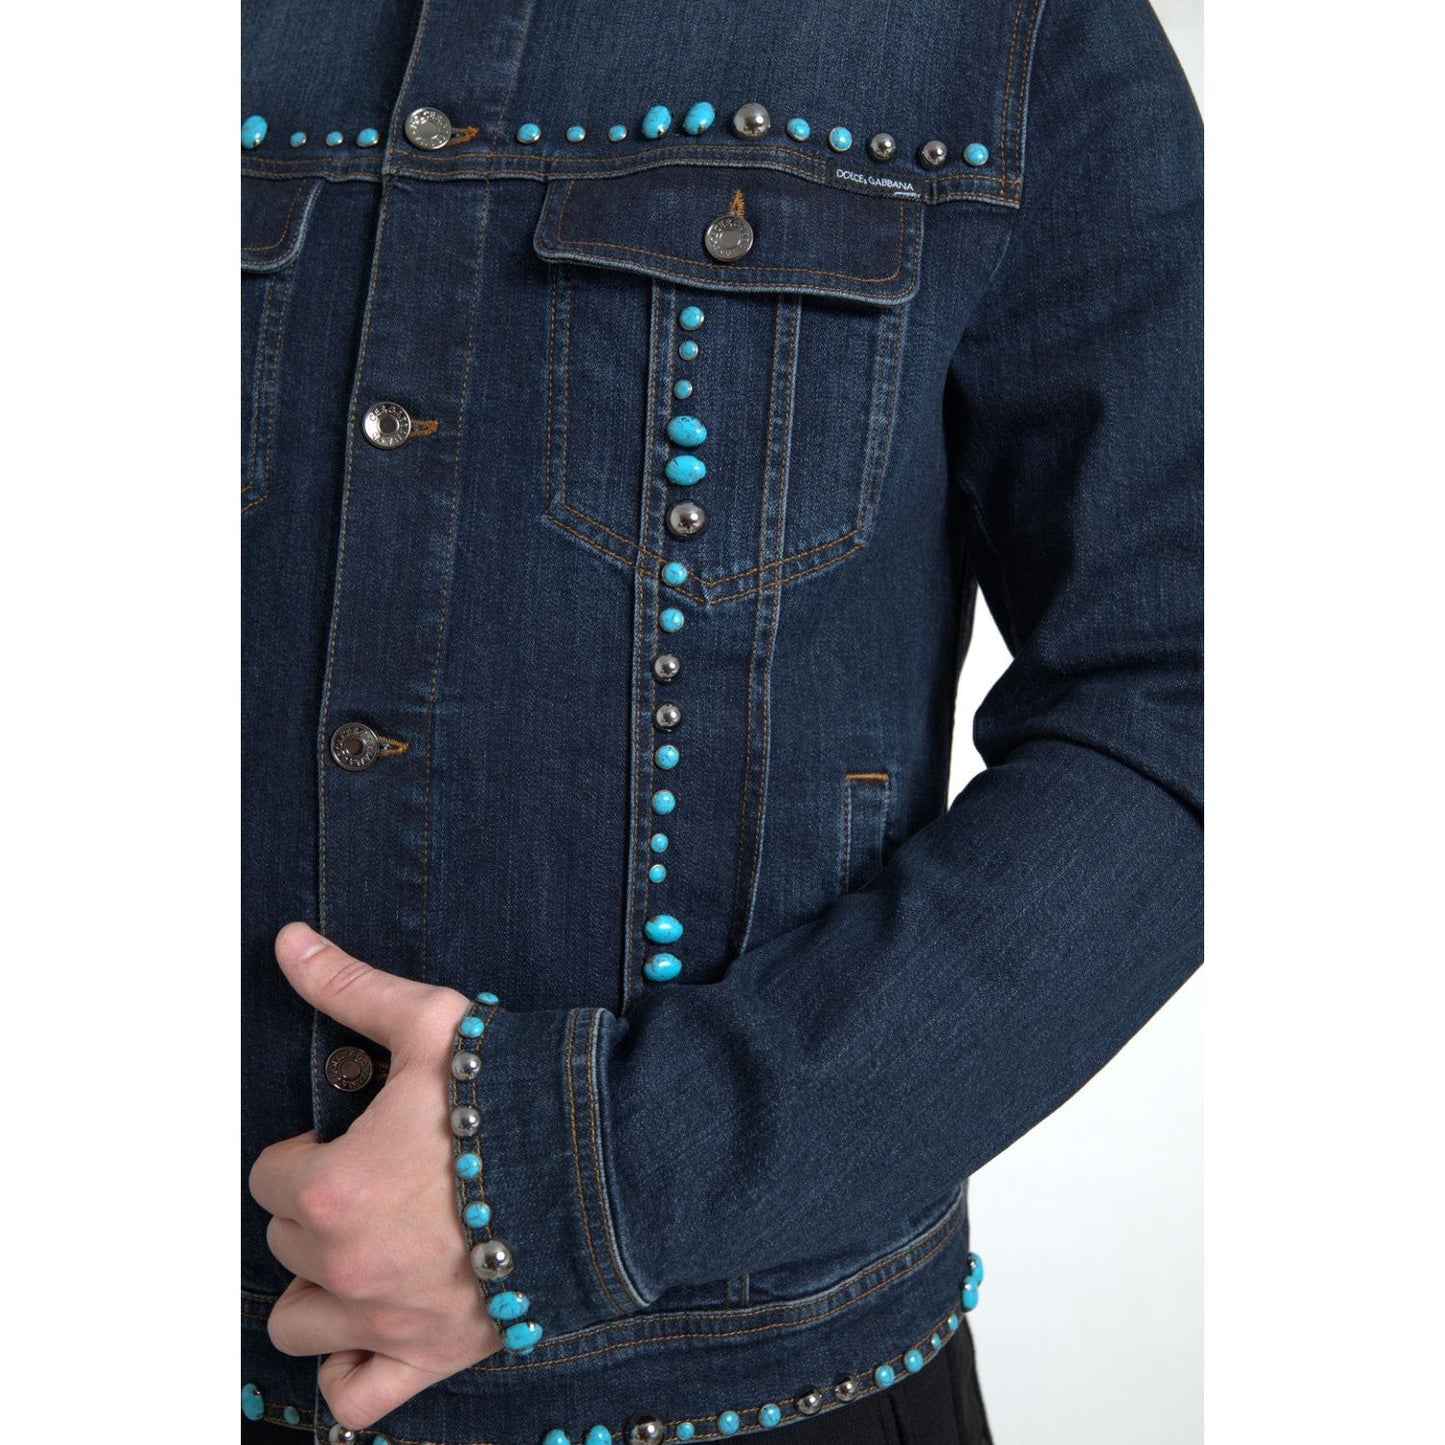 Dolce & Gabbana Embellished Turquoise Denim Jacket blue-denim-turquoise-stones-studded-jacket